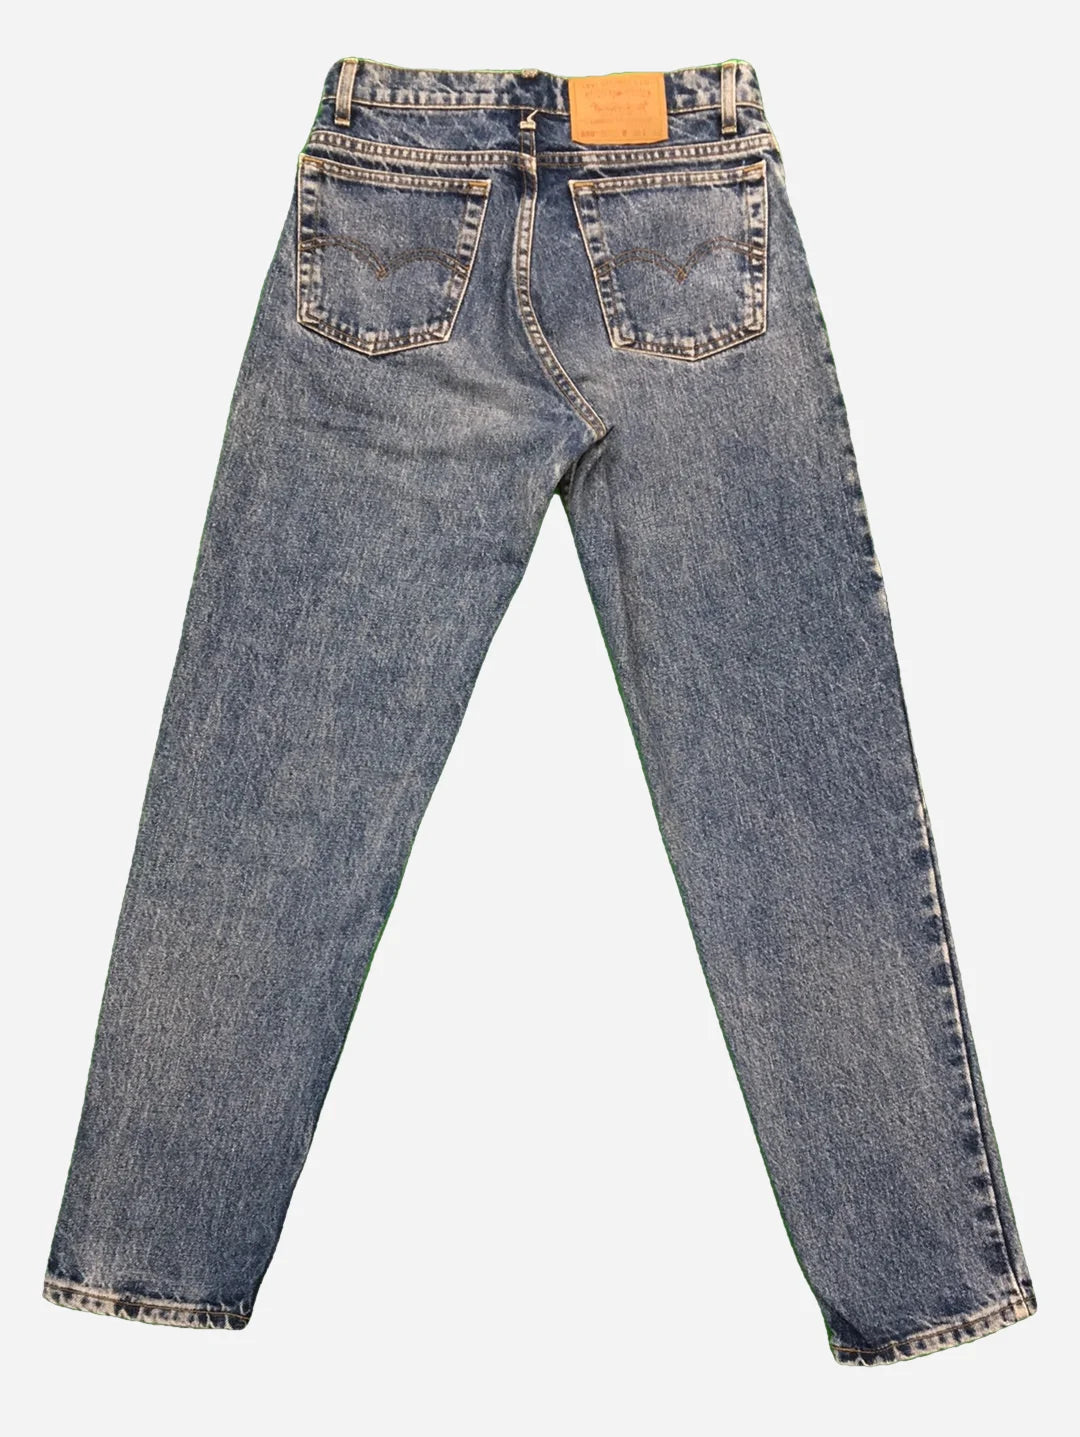 Levi’s 550 Jeans 30/32 (M)